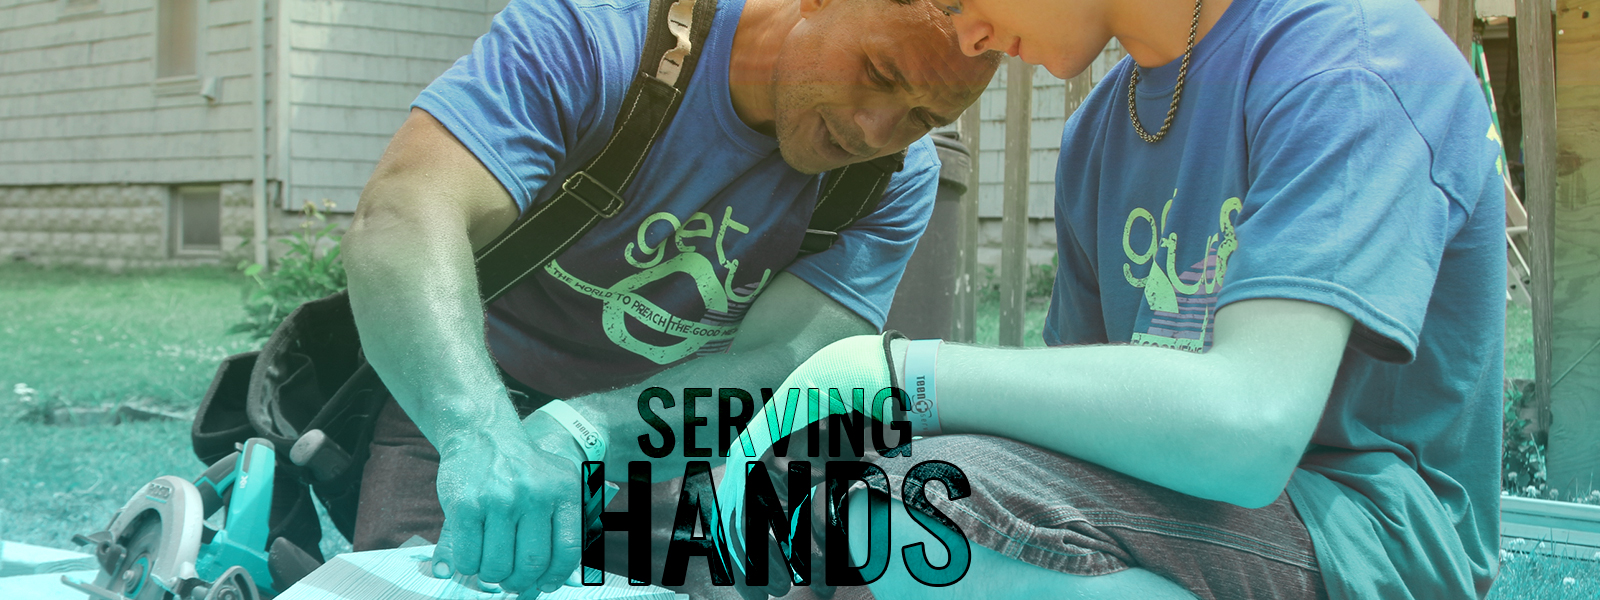 Serving Hands